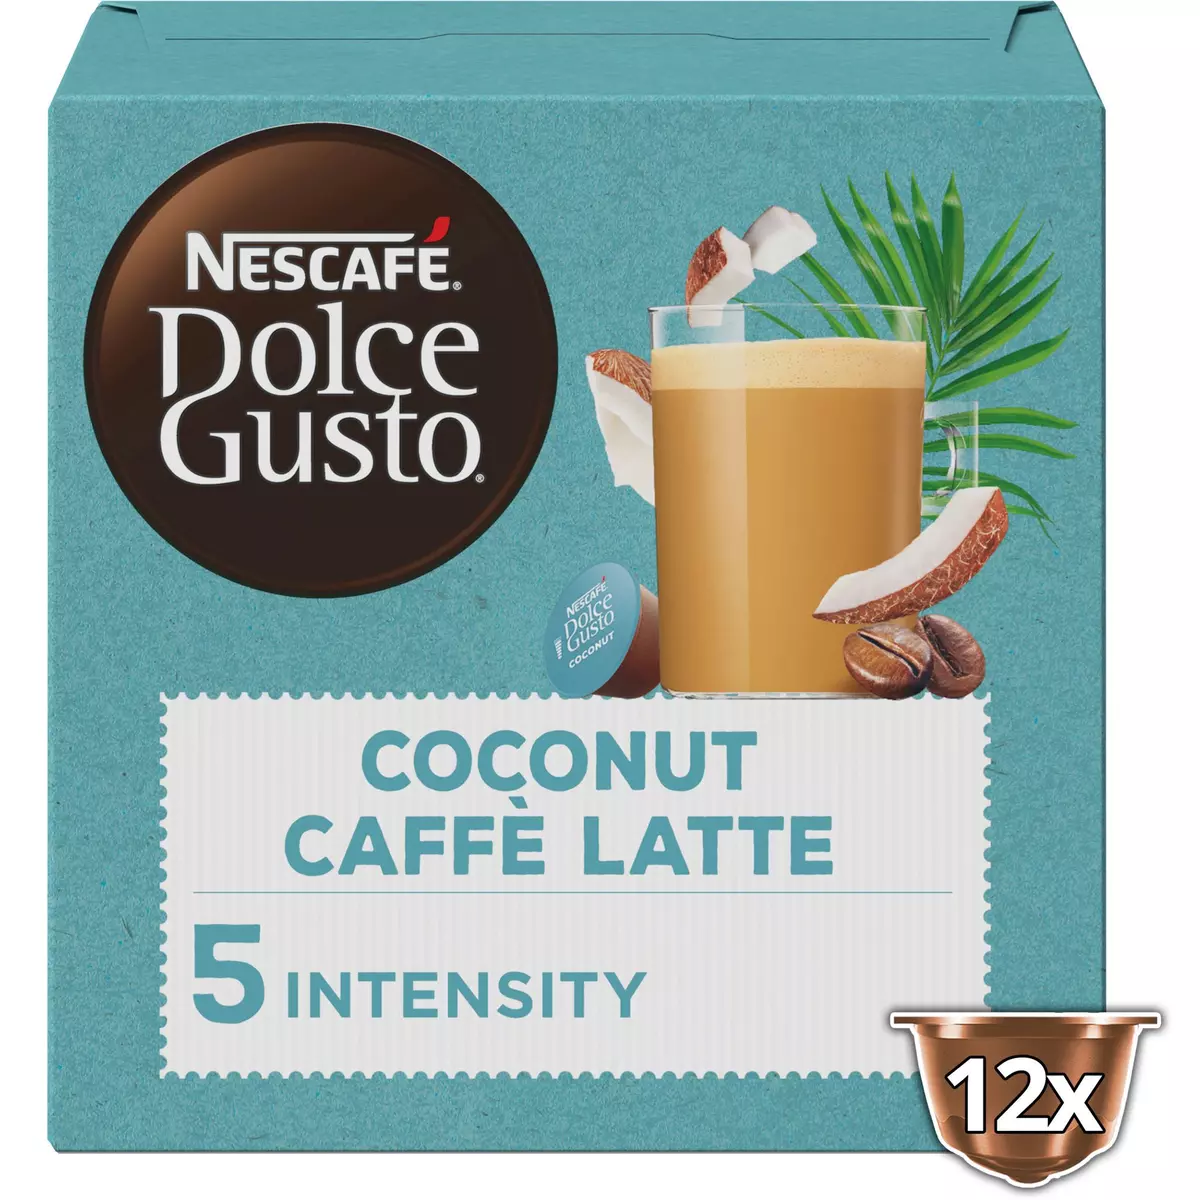 DOLCE GUSTO Capsules de café latte à la noix de coco intensité 5 12 capsules 116g